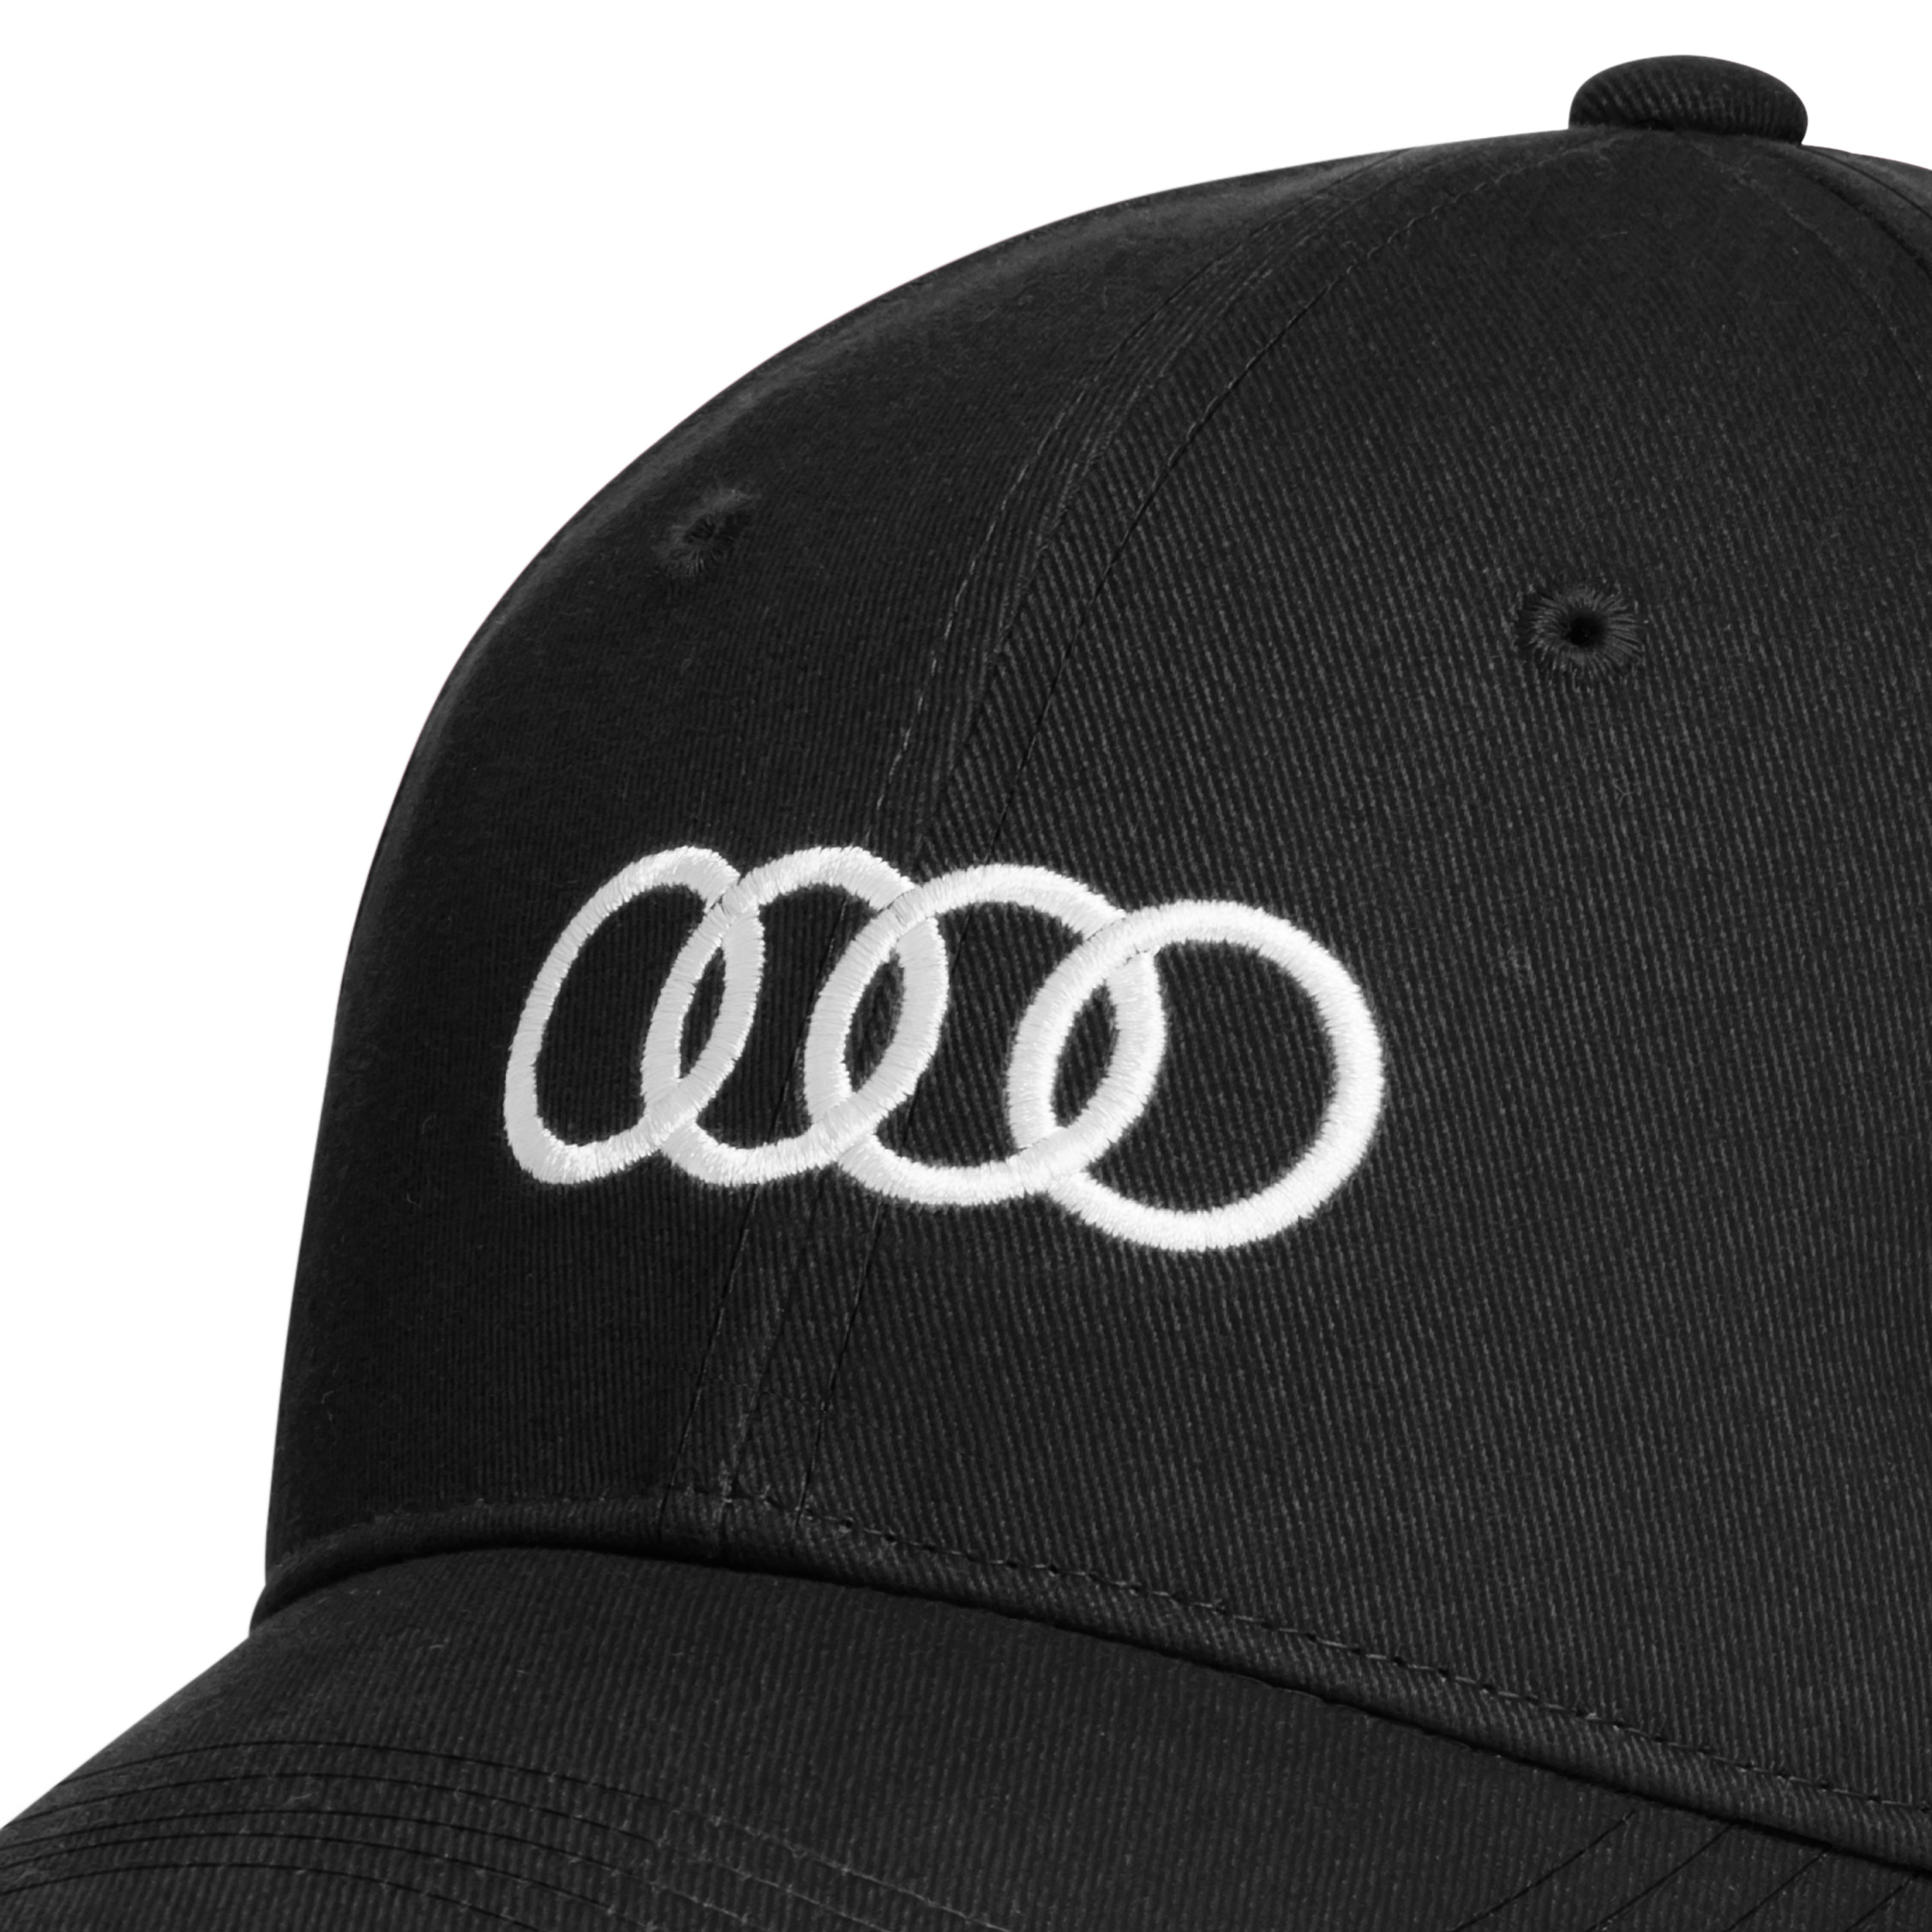 Original Audi Cap Baseballkappe Baseballcap Basecap Mütze schwarz